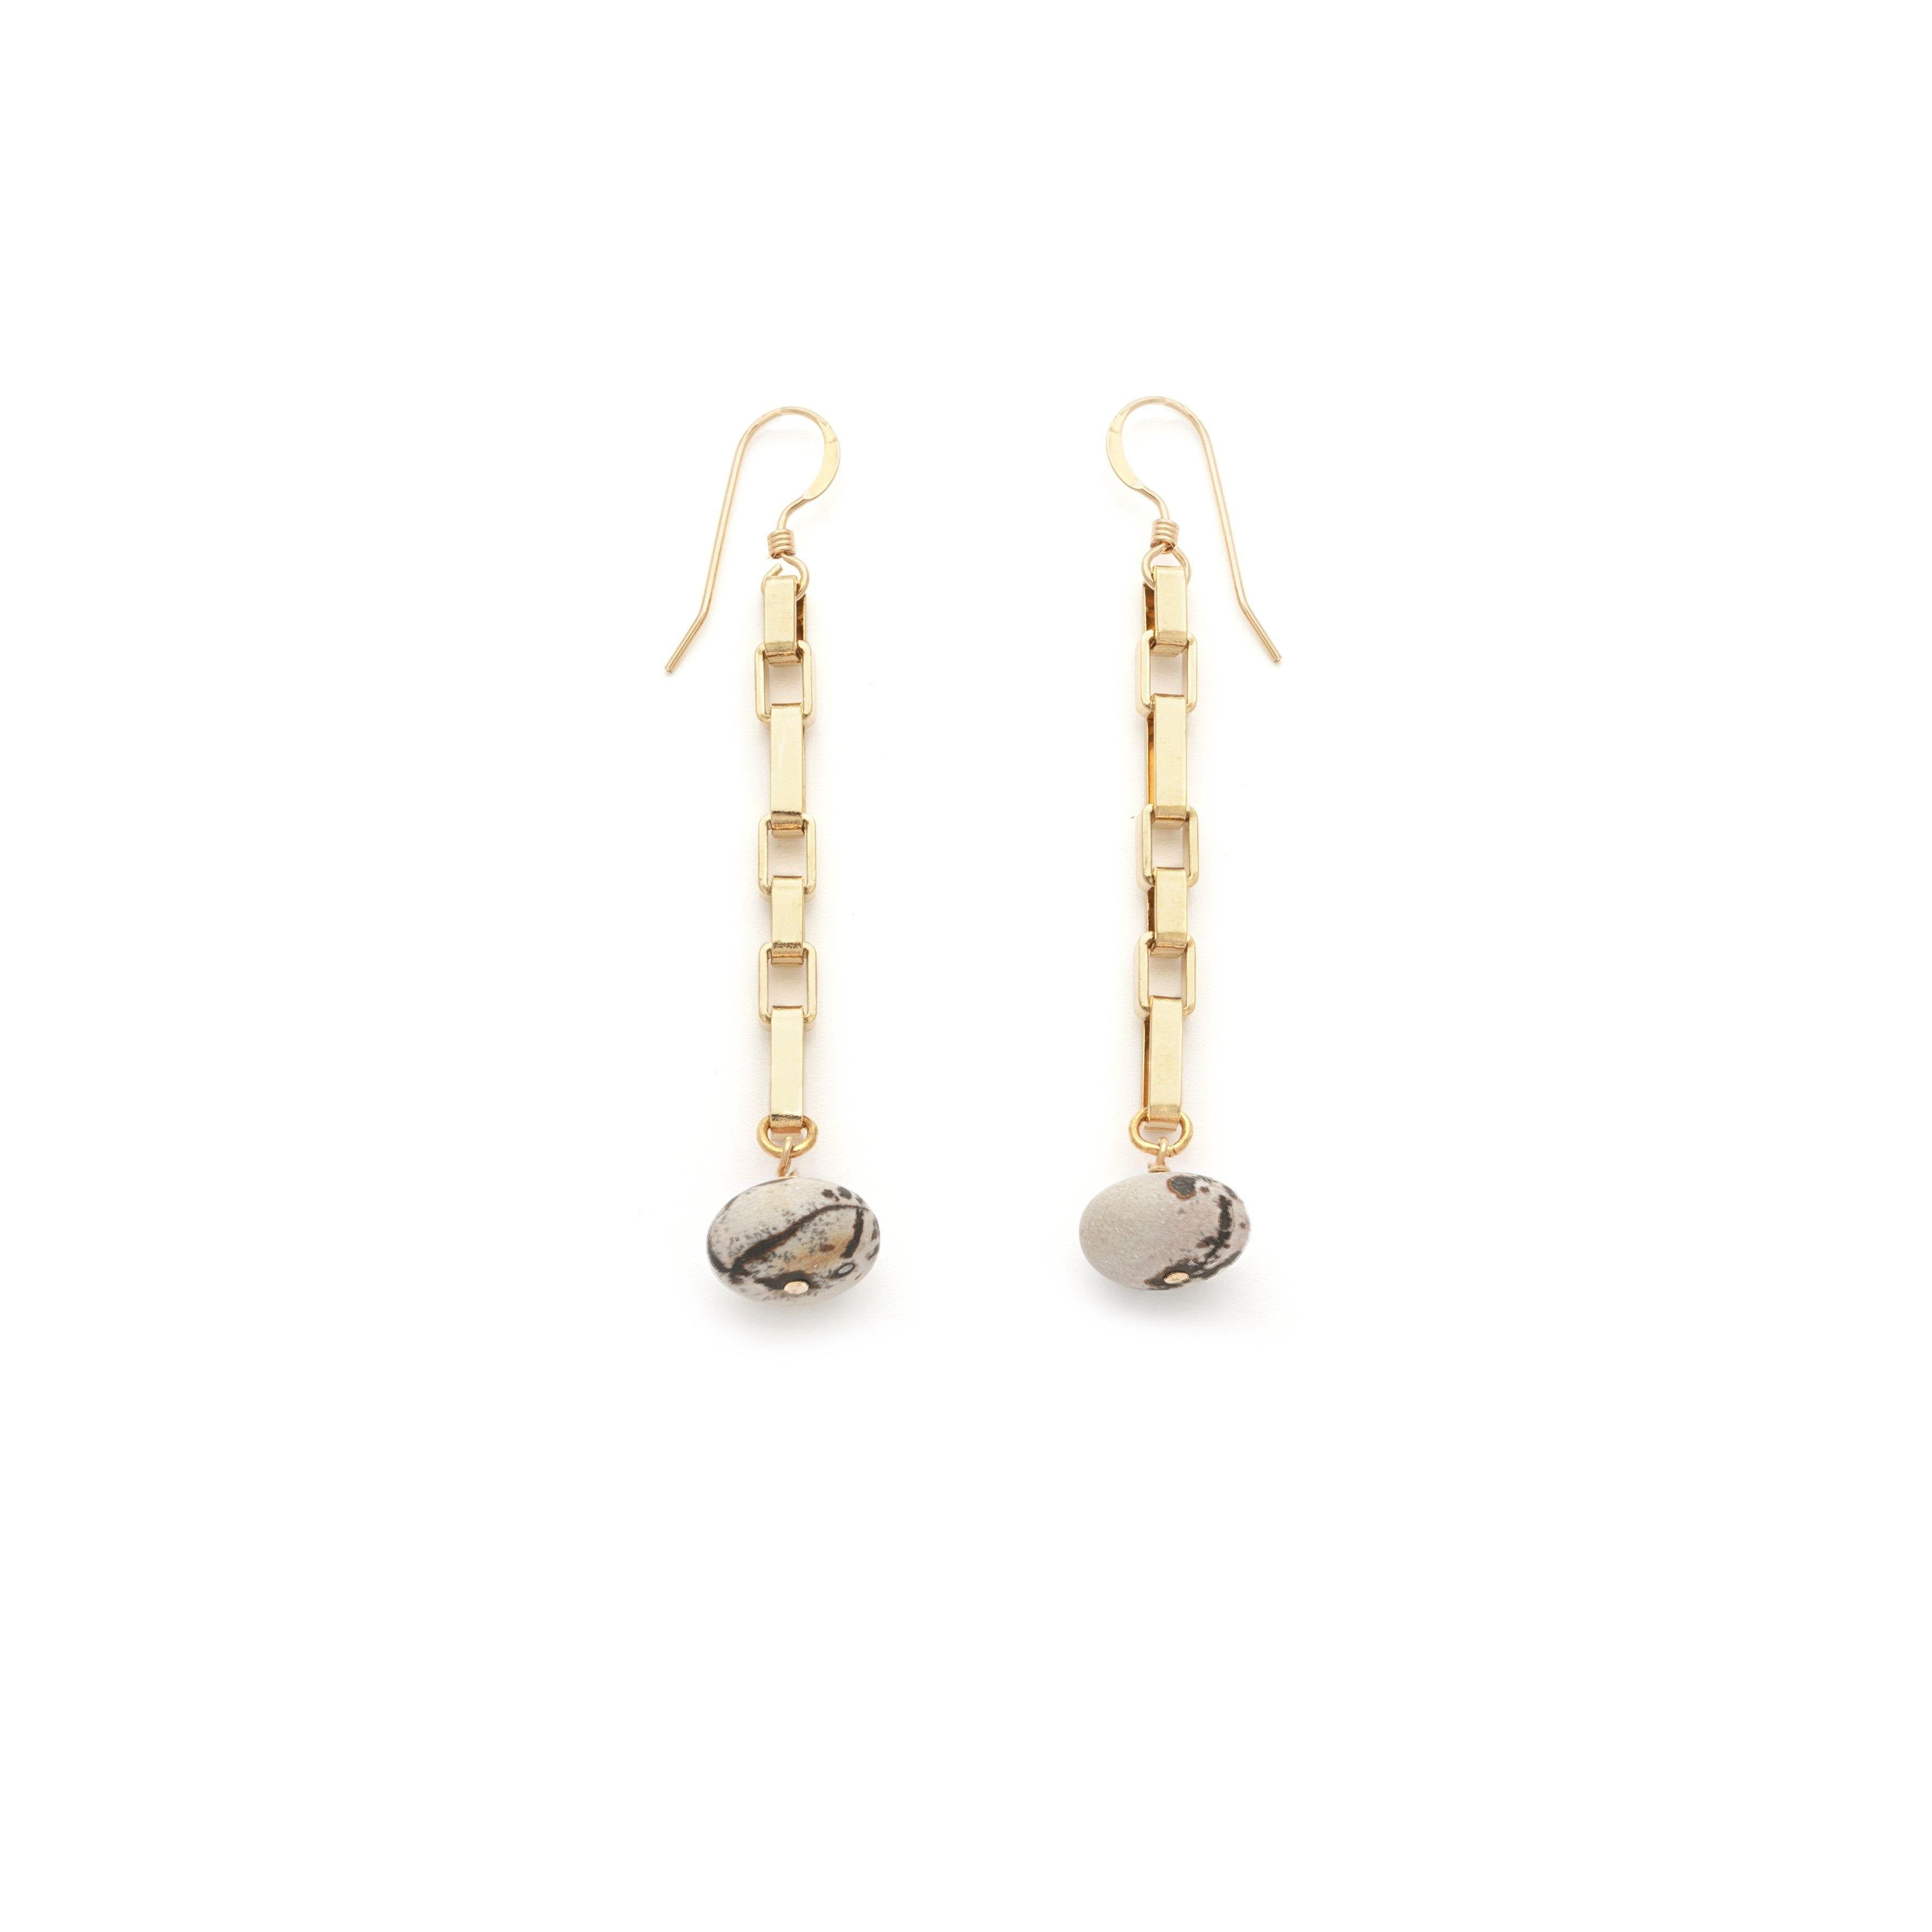 Leopard Jasper Earrings - Irit Sorokin Designs Jewelry